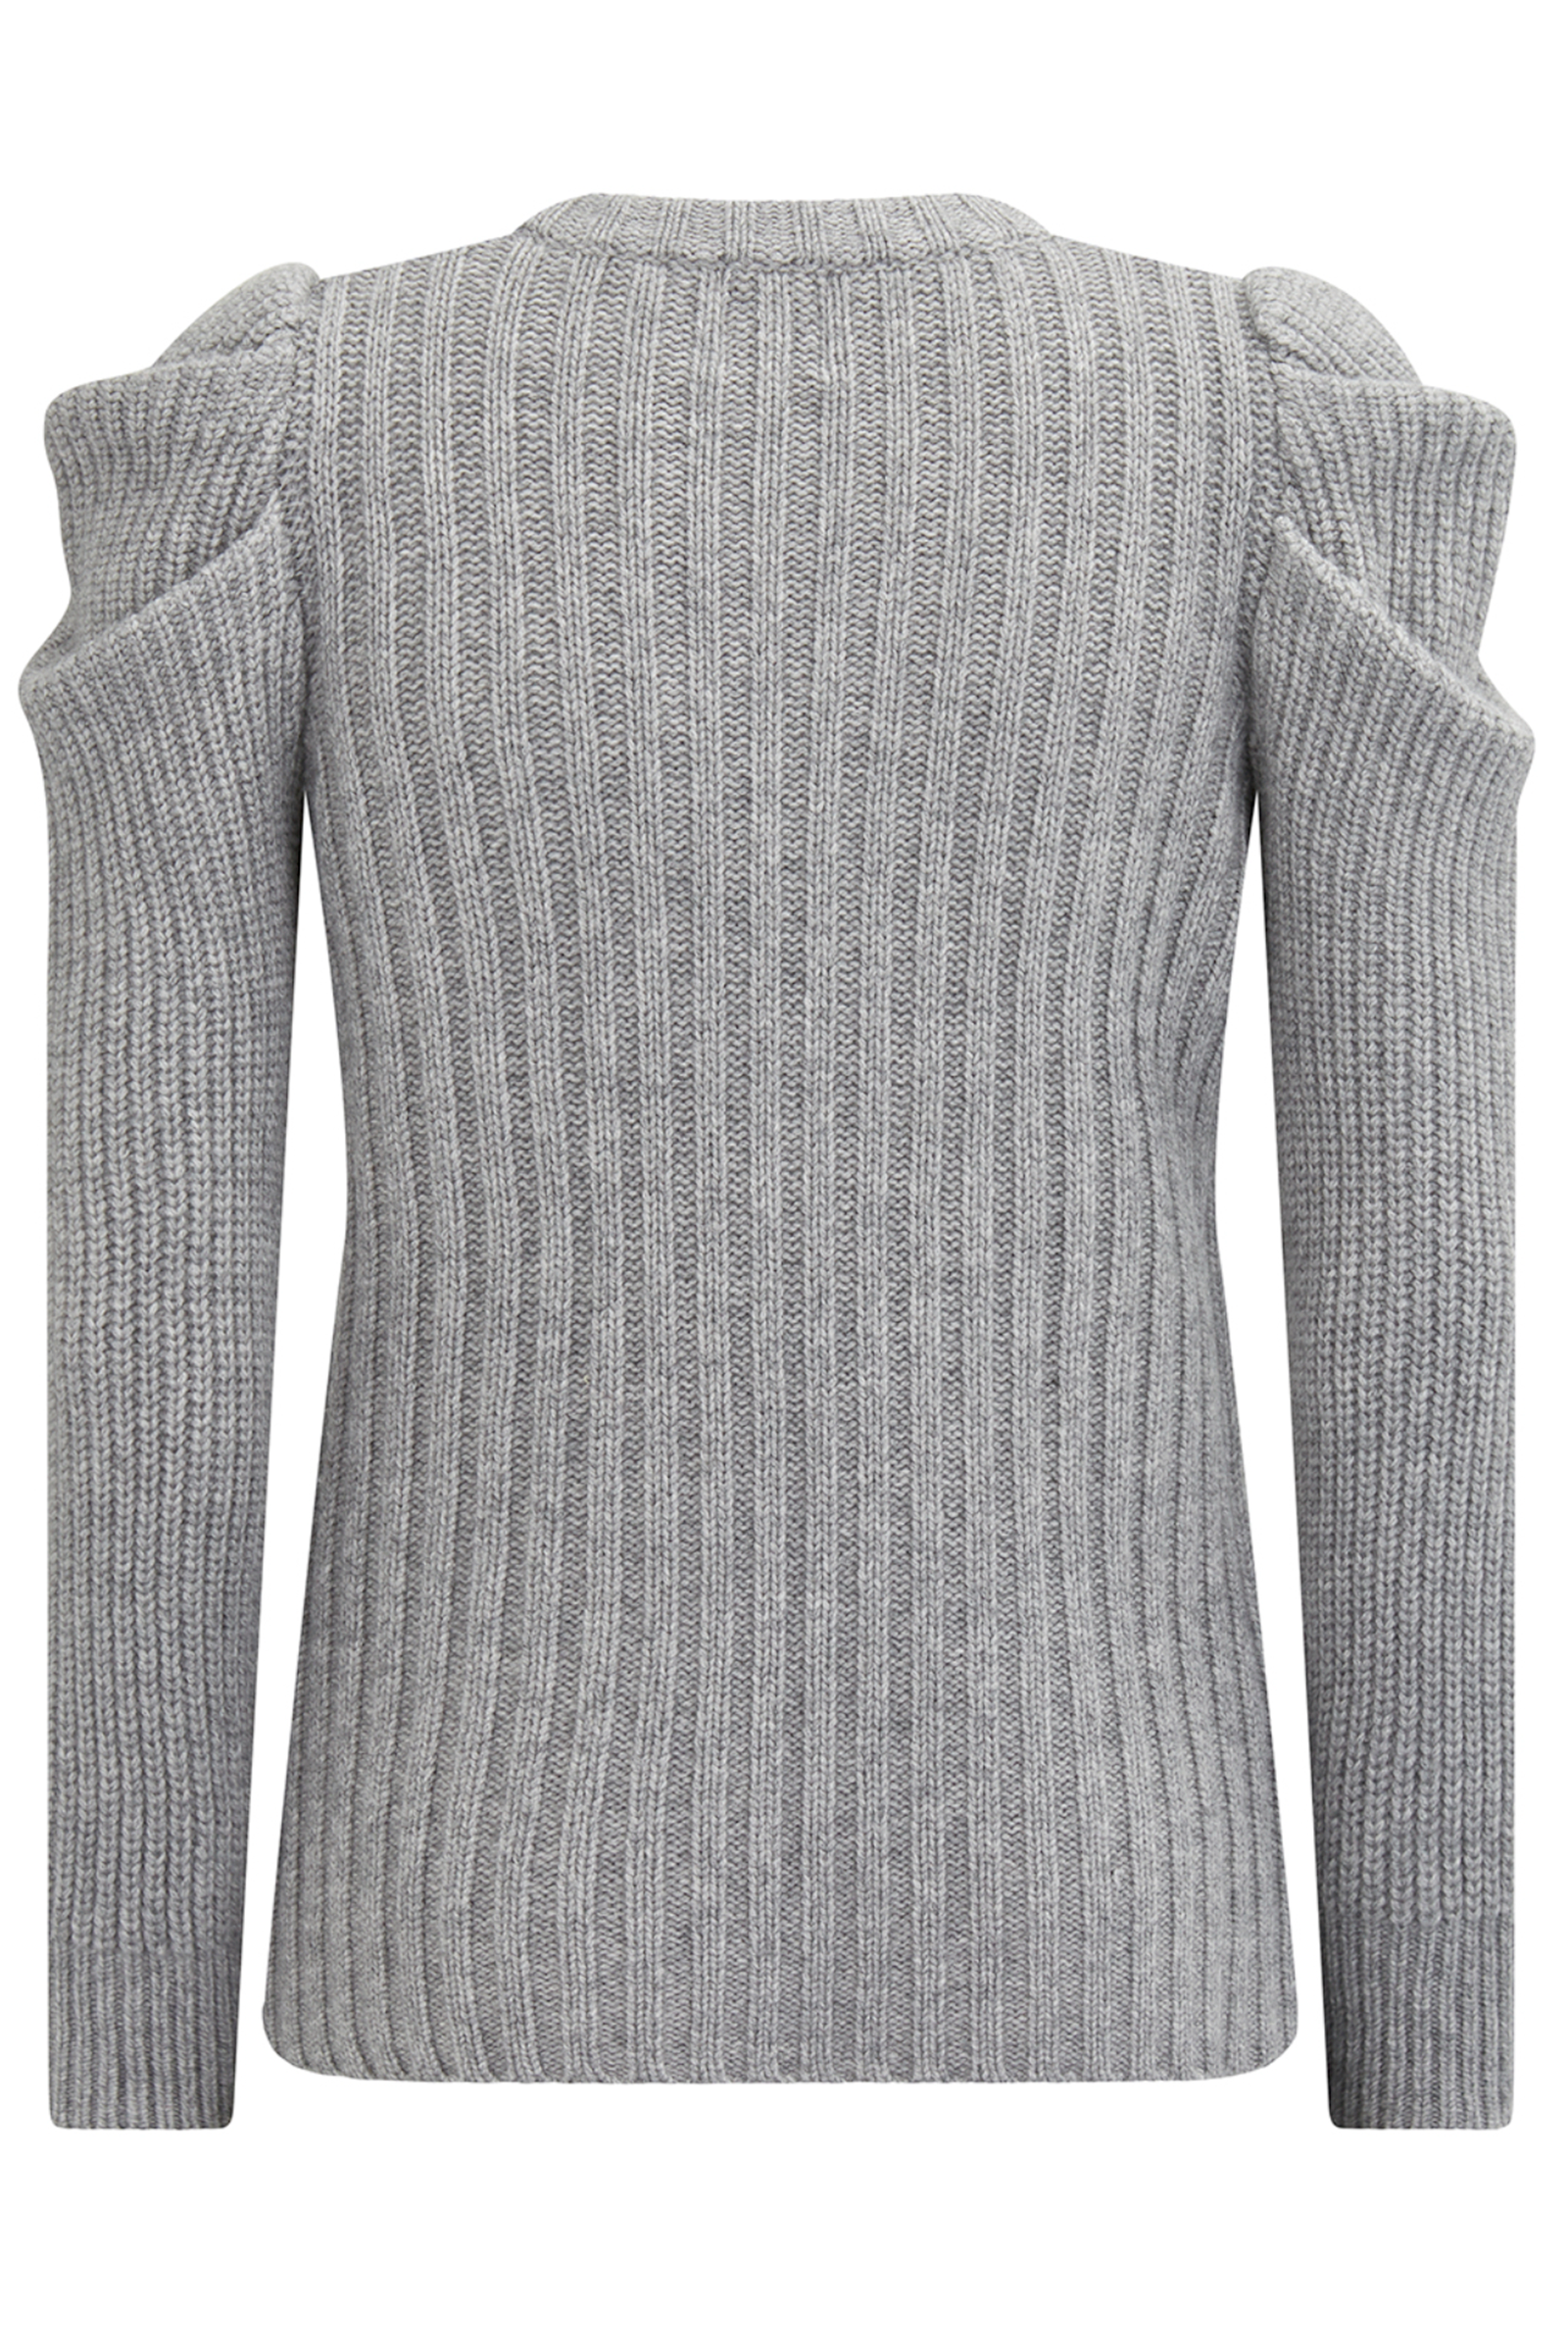 Madeleine Thompson Wengen Sweater in Grey